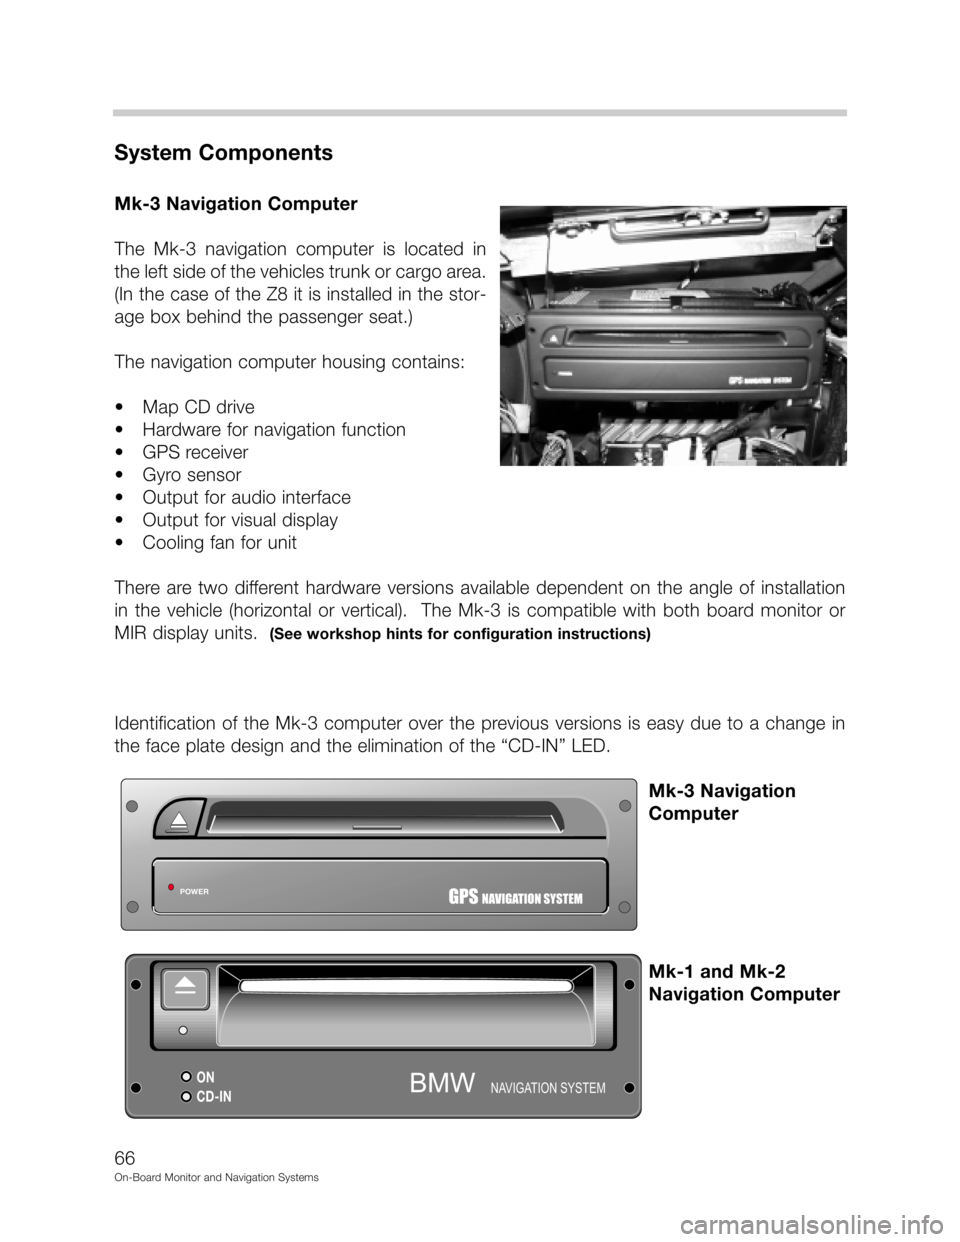 BMW 3 SERIES 2002 E46 On Board Monitor System Workshop Manual DD



"&
(	
-.2./!!
	0", 1" !2./
# 9. 
&
 	
   
&
9
70
